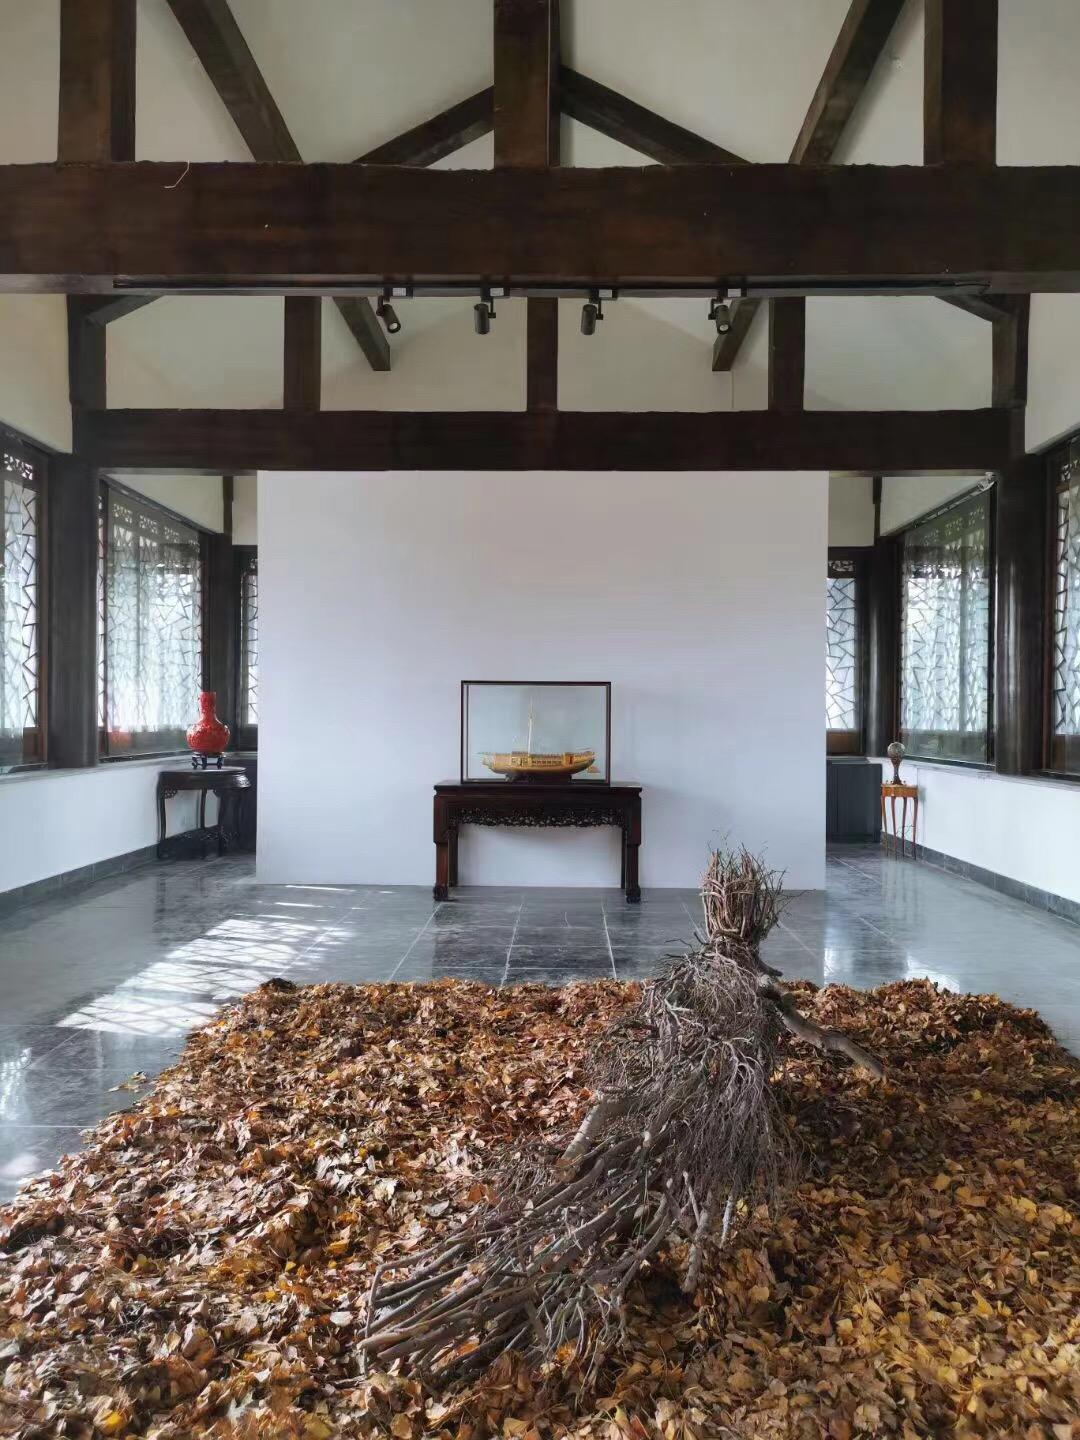 中国首家园林美术馆“从园林开始”展览前言及作品高清全图